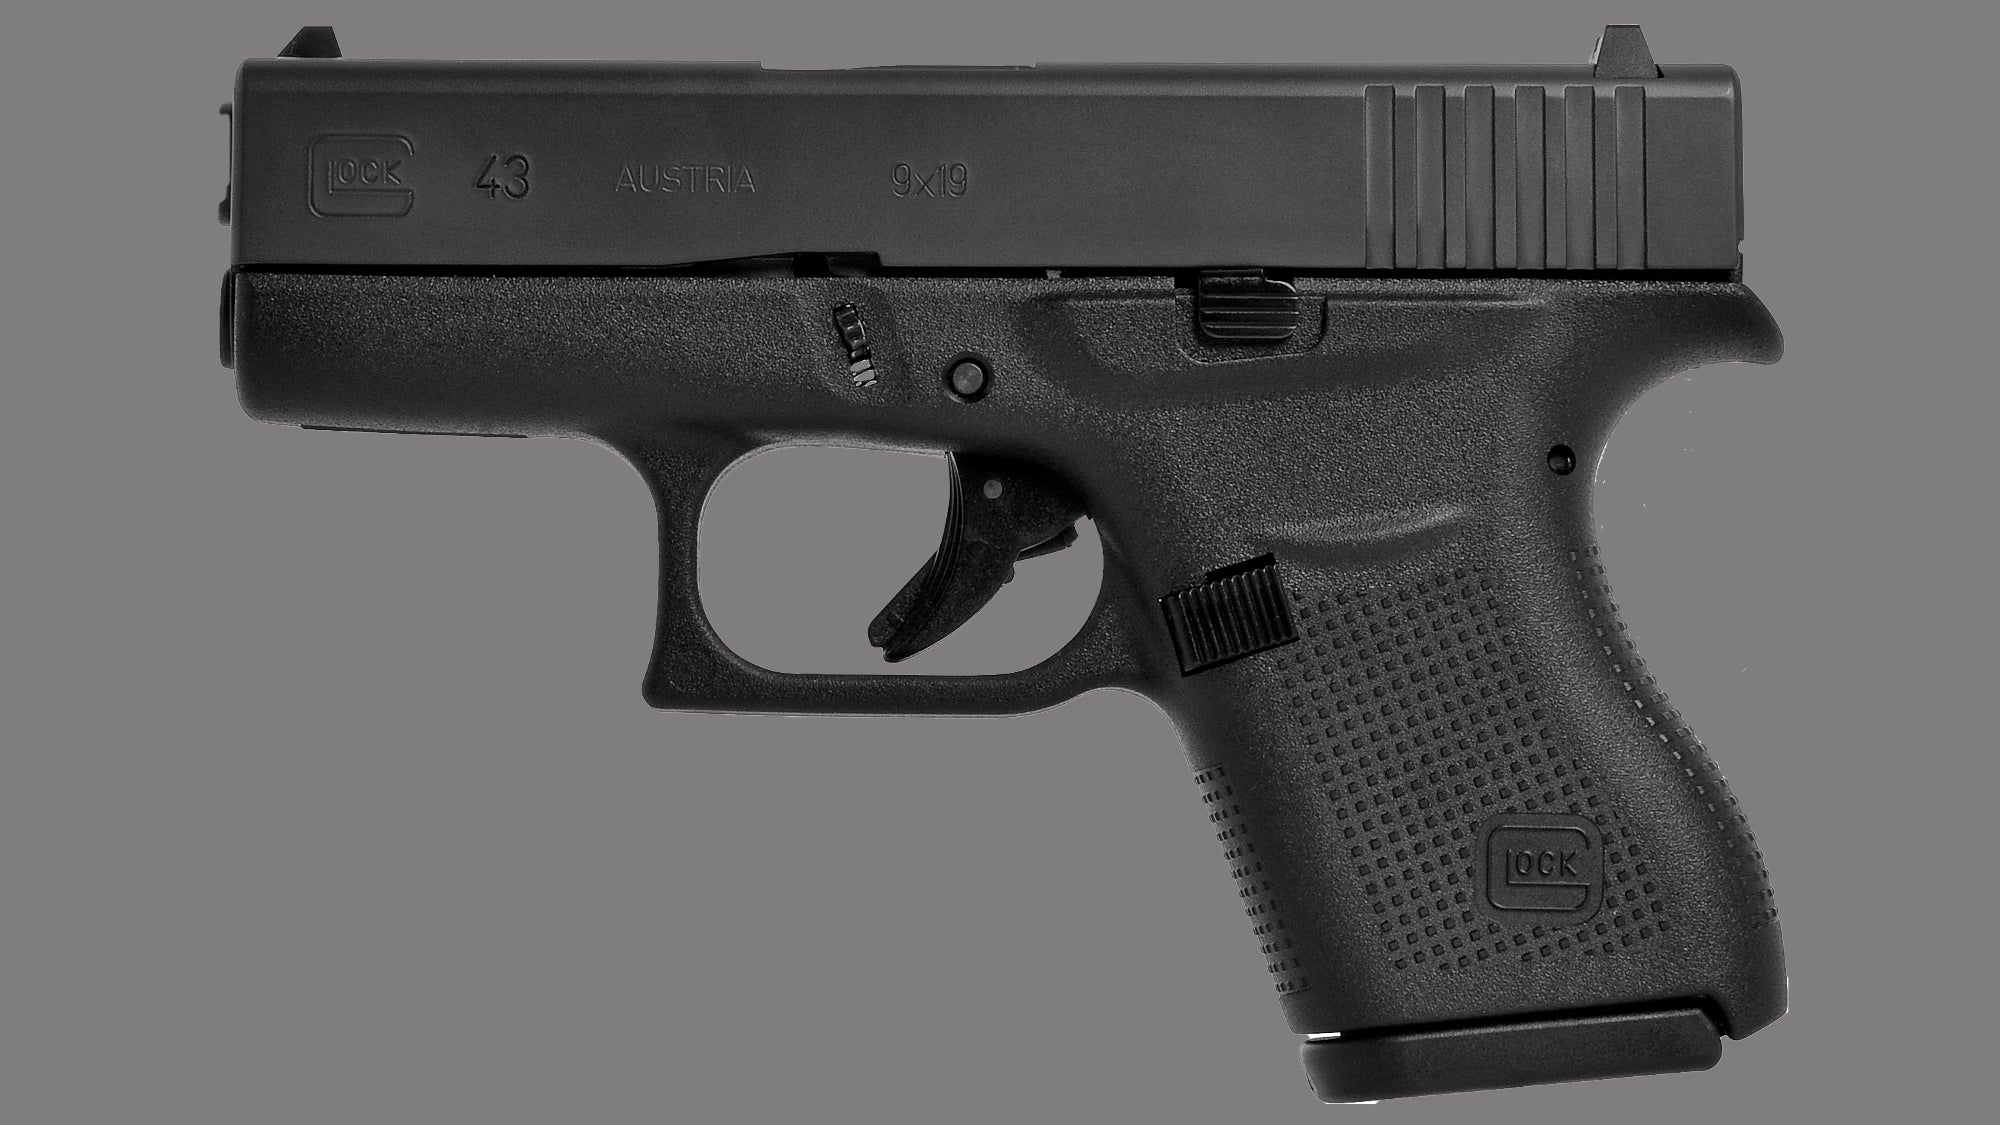 Glock 43 pistol on a gray background